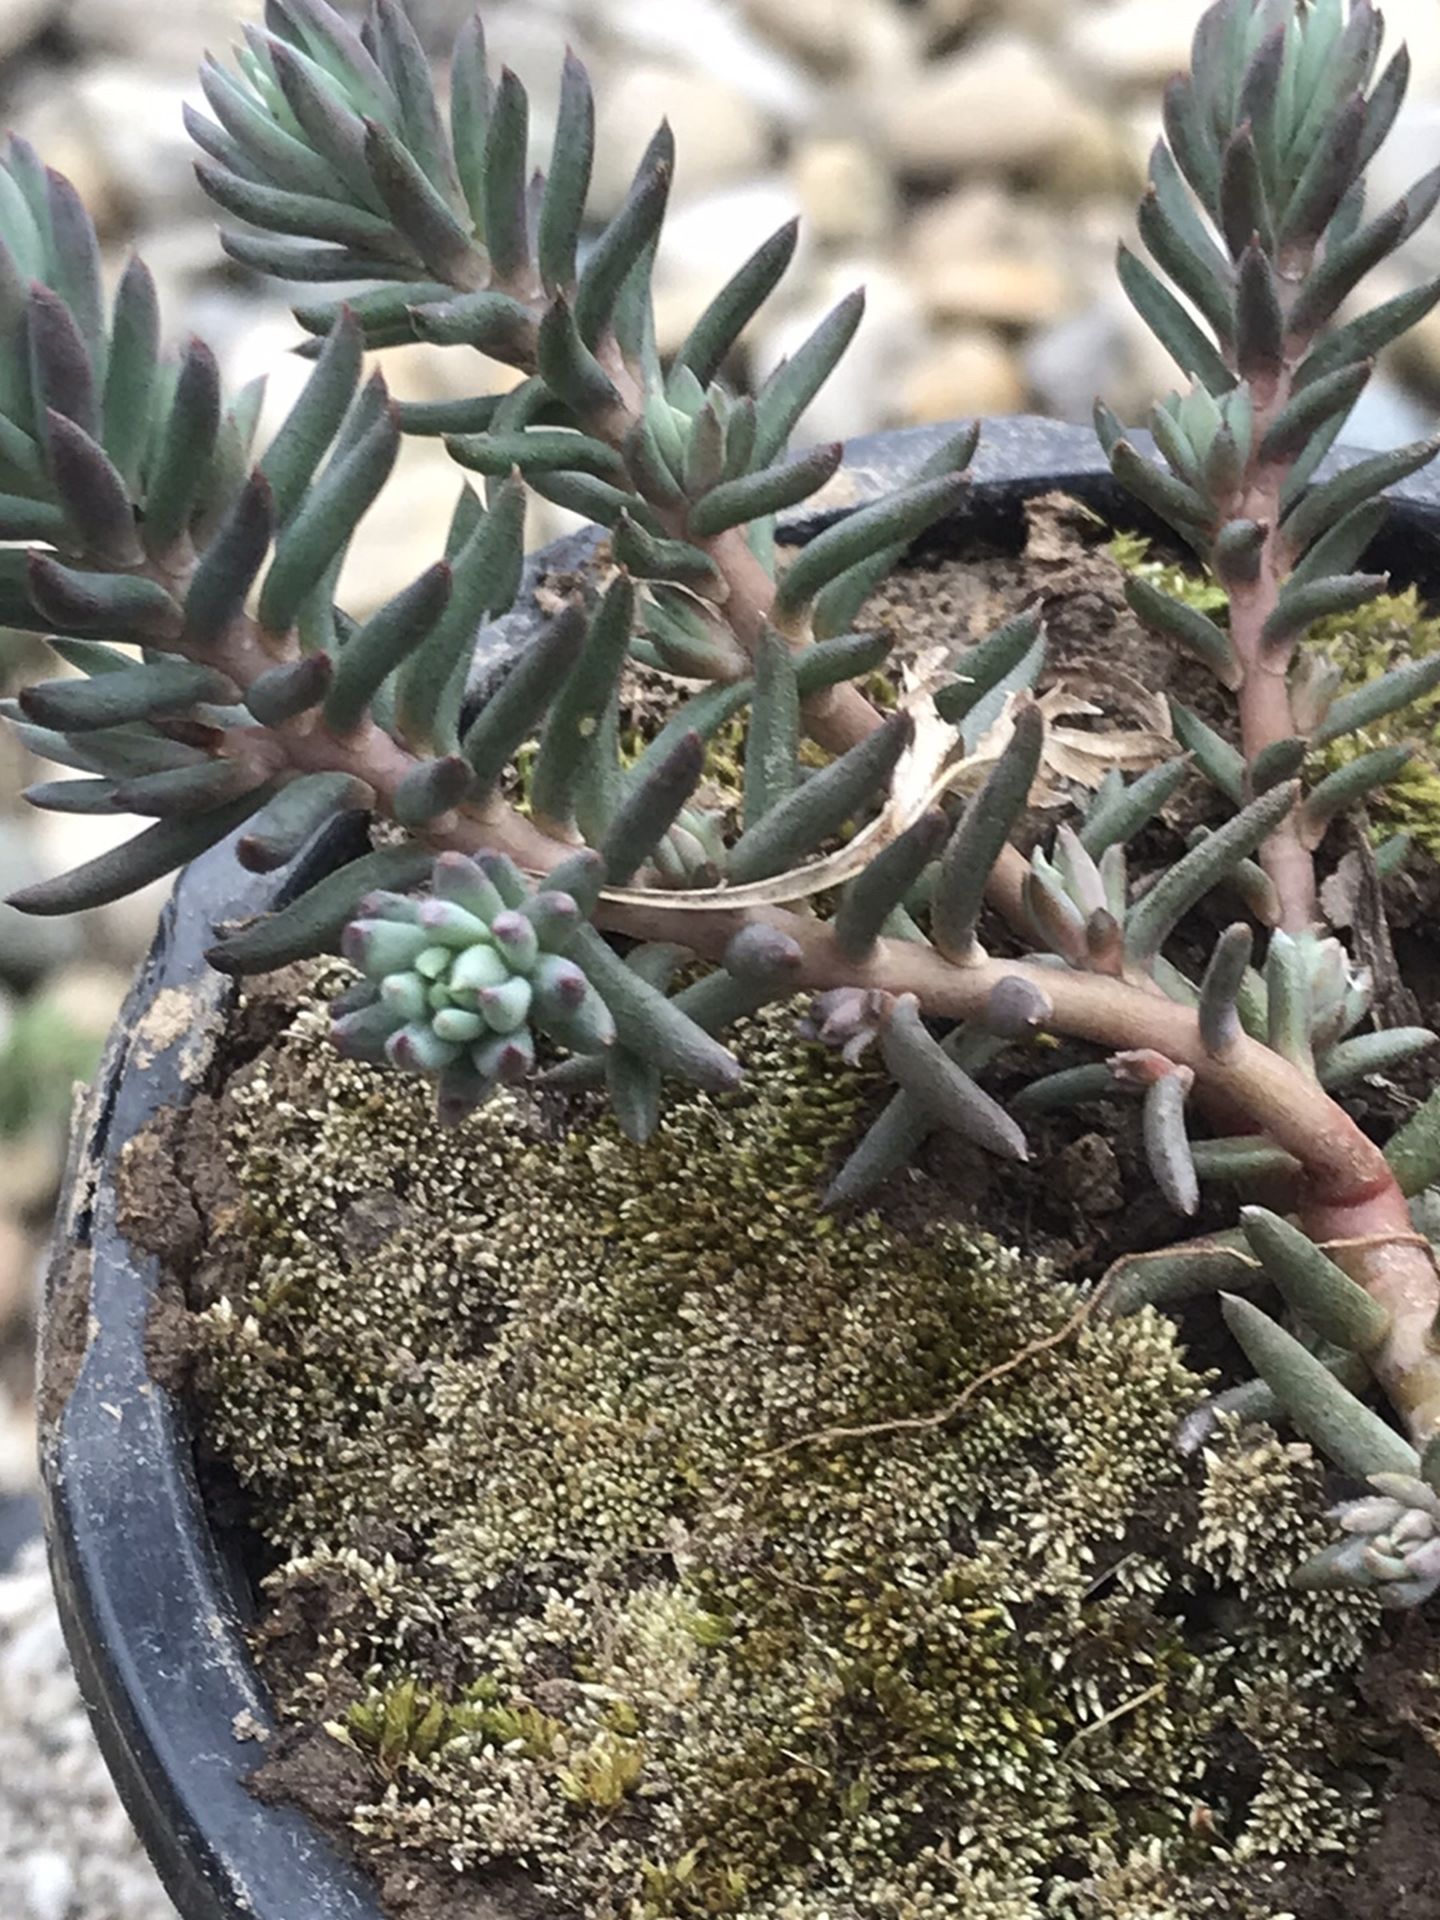 1 Spanish Stone (Sedum hispanicum ) - Succulent Plant in pot